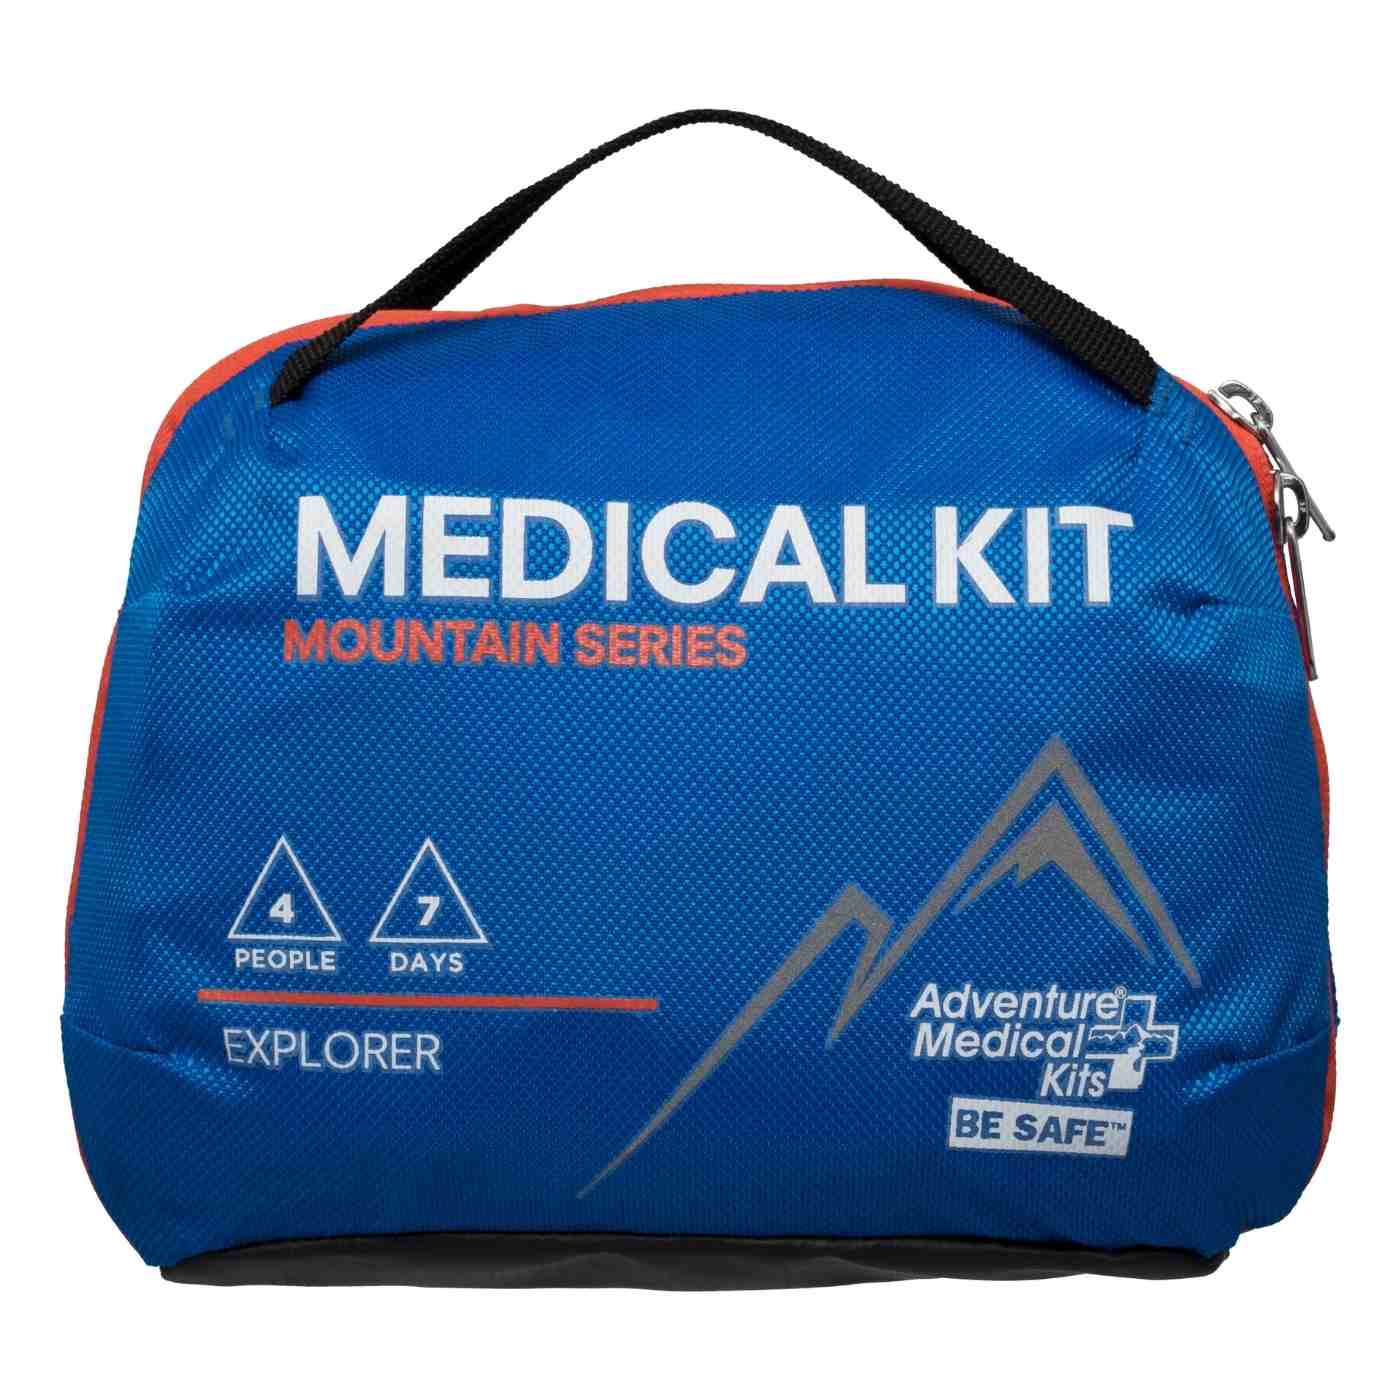 Mountain Series Medical Kit - Explorer front